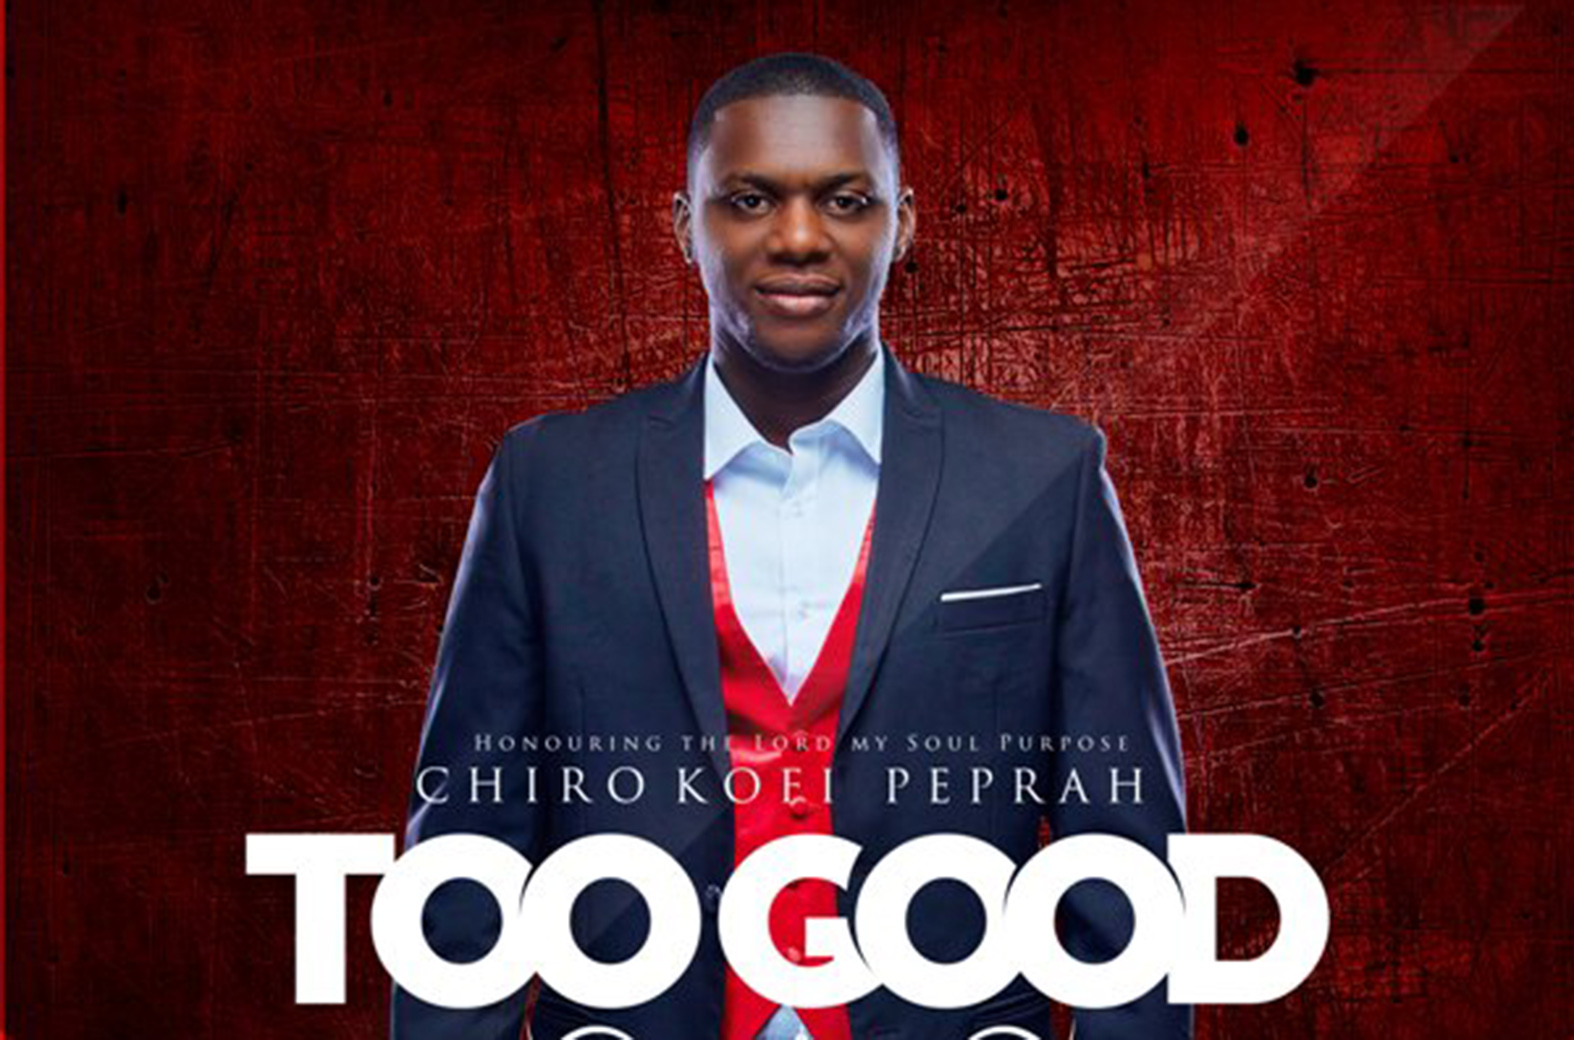 Too Good by Chiro Kofi Peprah